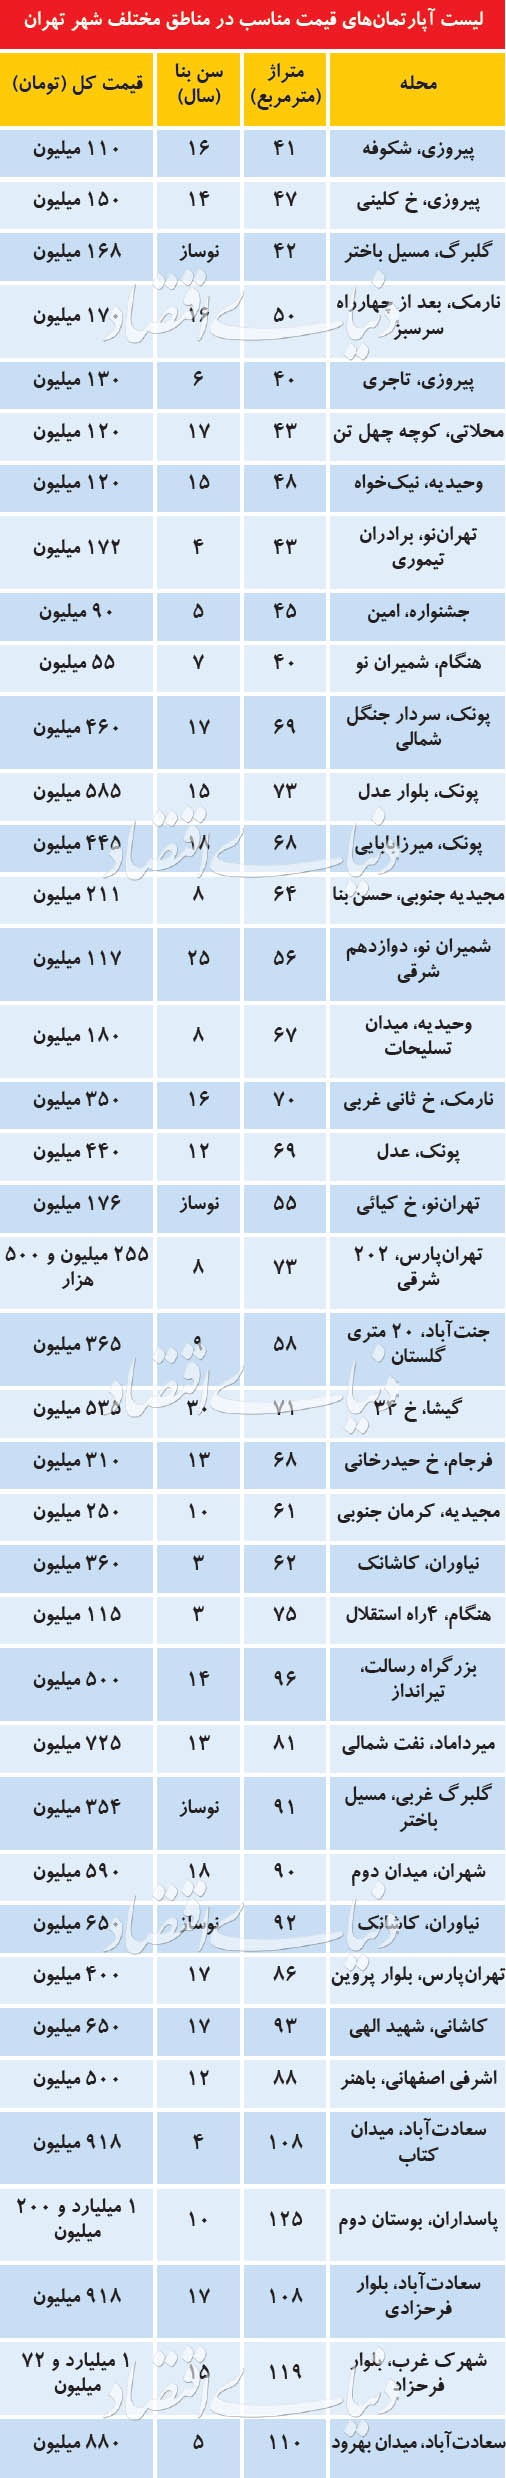 قیمت آپارتمانهای ارزان در نقاط مختلف تهران